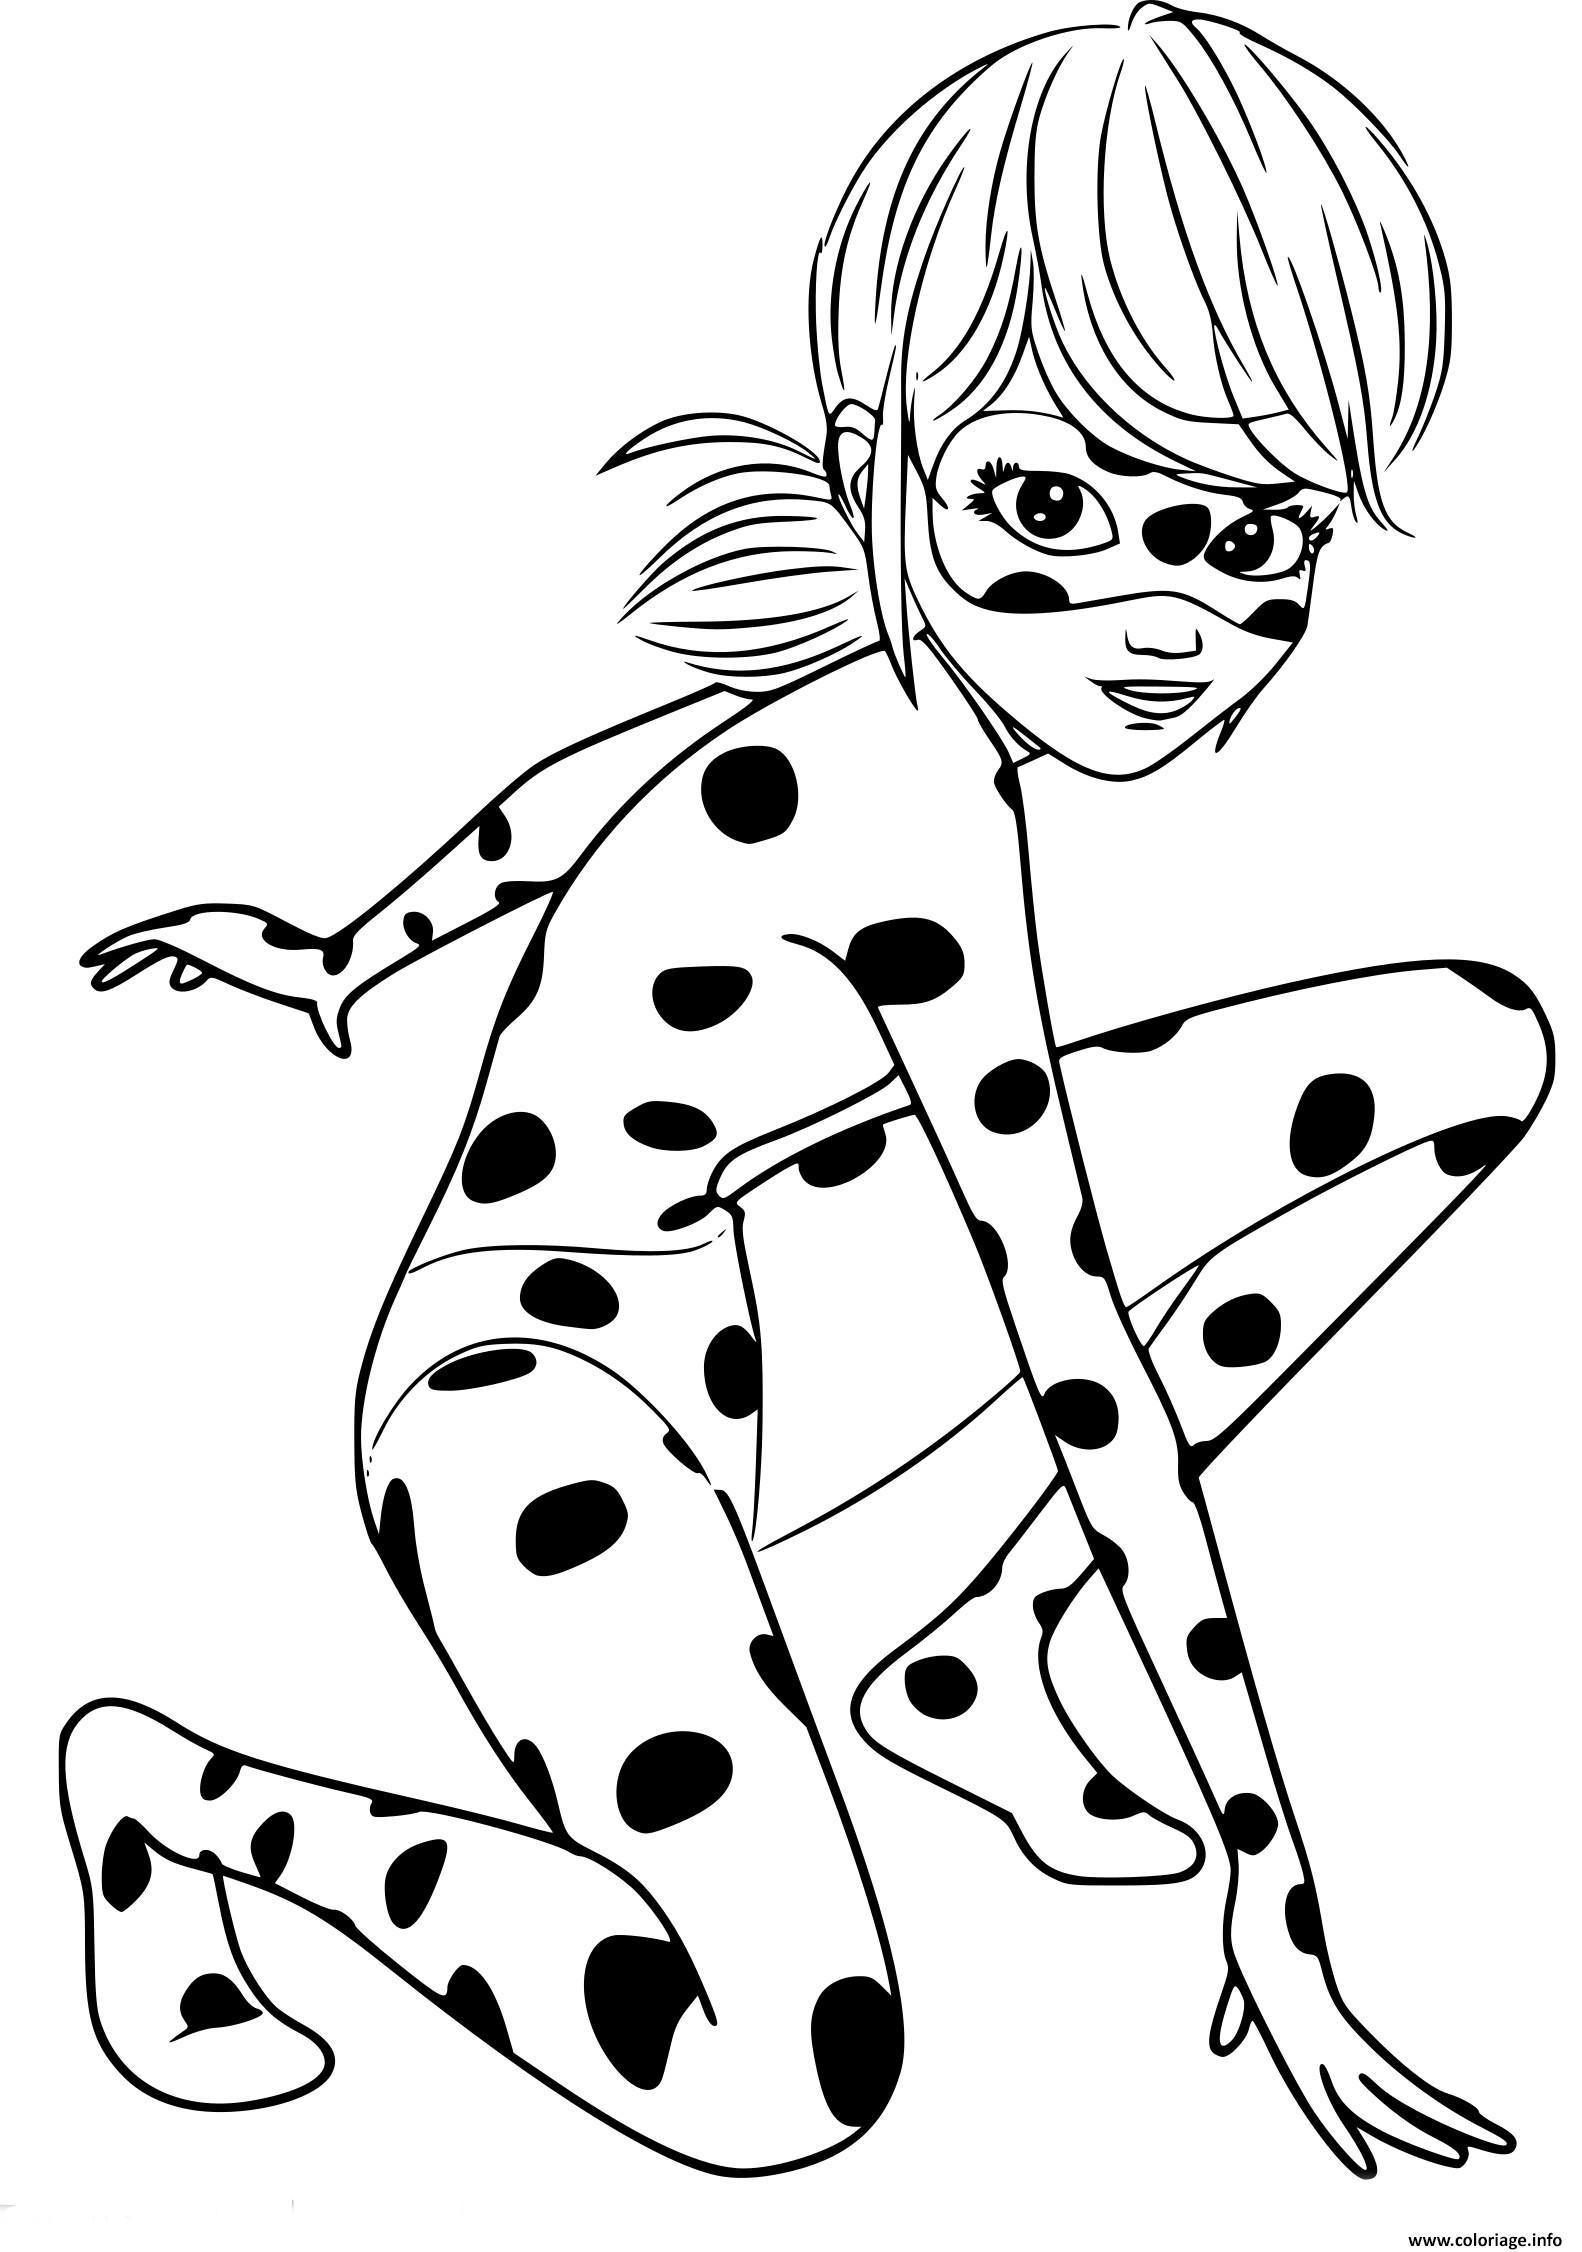 Coloriage Ladybug Miraculous Chat Noir Original Dessin Ladybug Miraculous A Imprimer